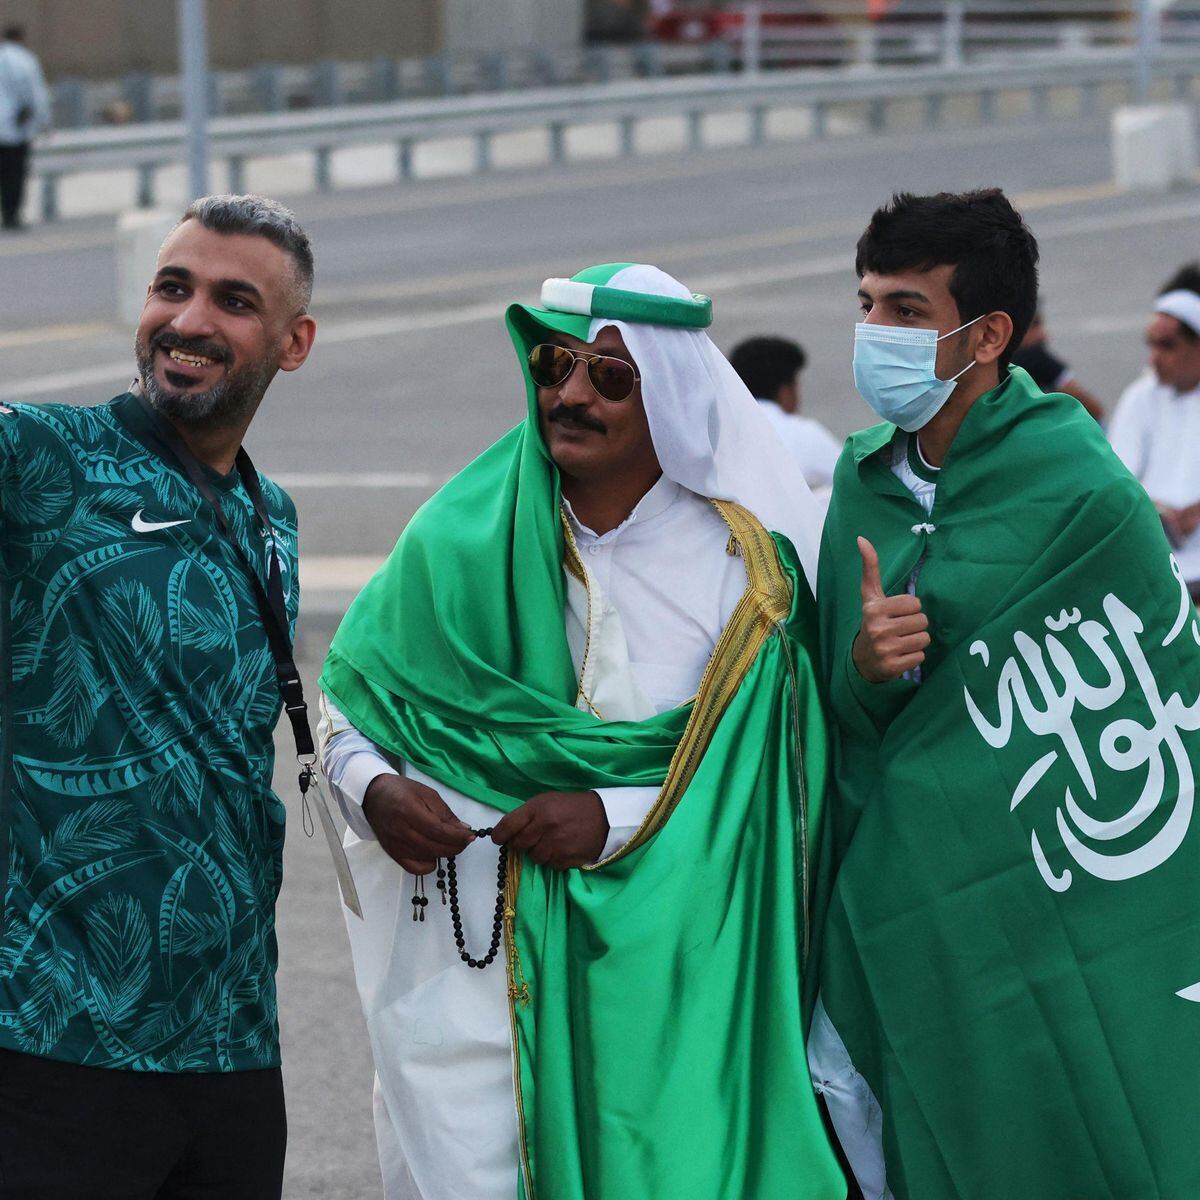 Jeddah na Arábia Saudita será única sede do Mundial de Clubes de 2023